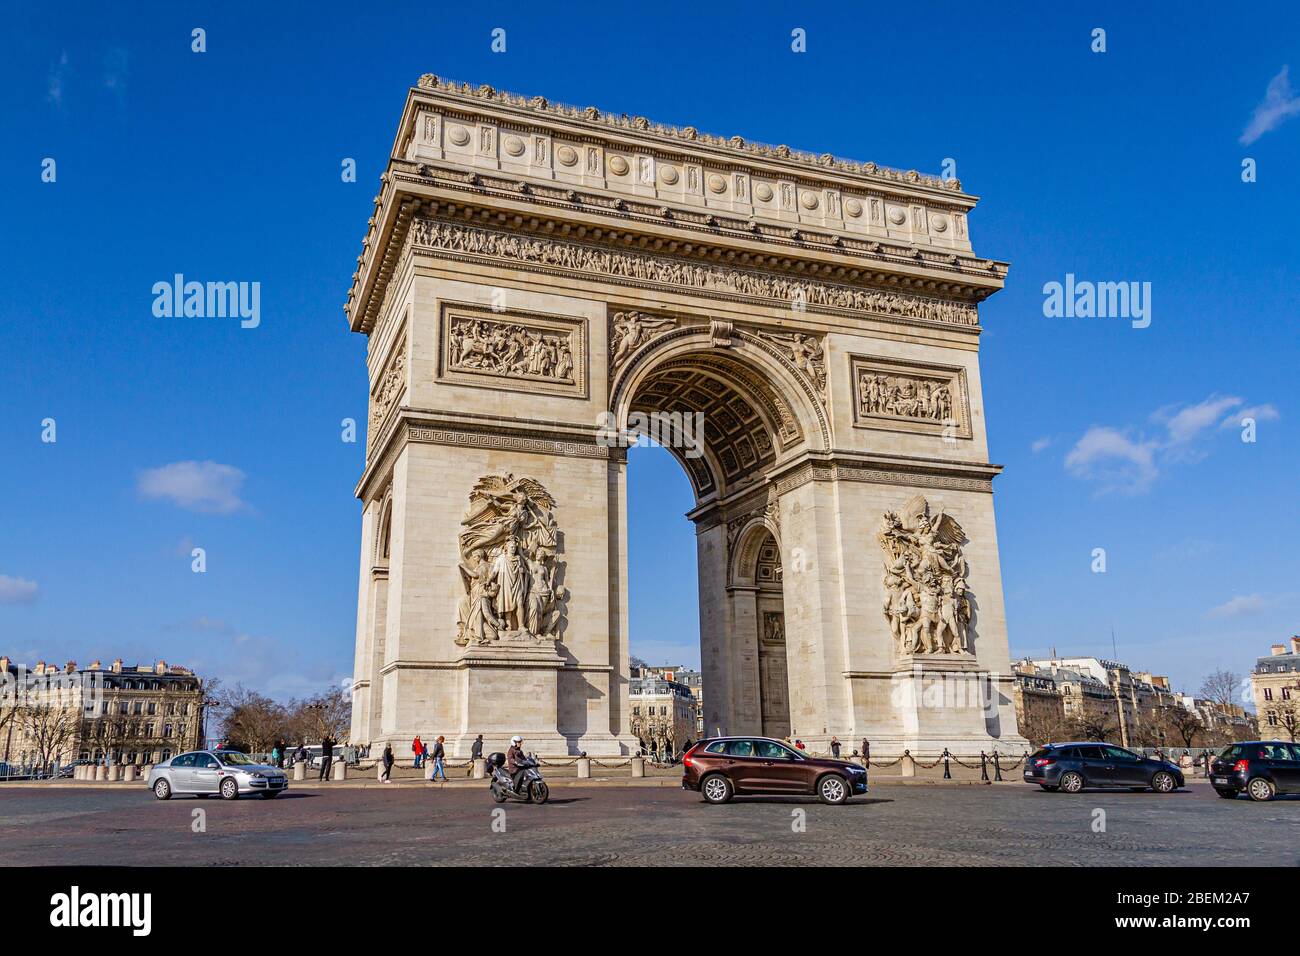 Der Triumphbogen, ein bedeutendes Denkmal auf dem Place Charles de Gaulle, Paris, Frankreich. Februar 2020. Stockfoto